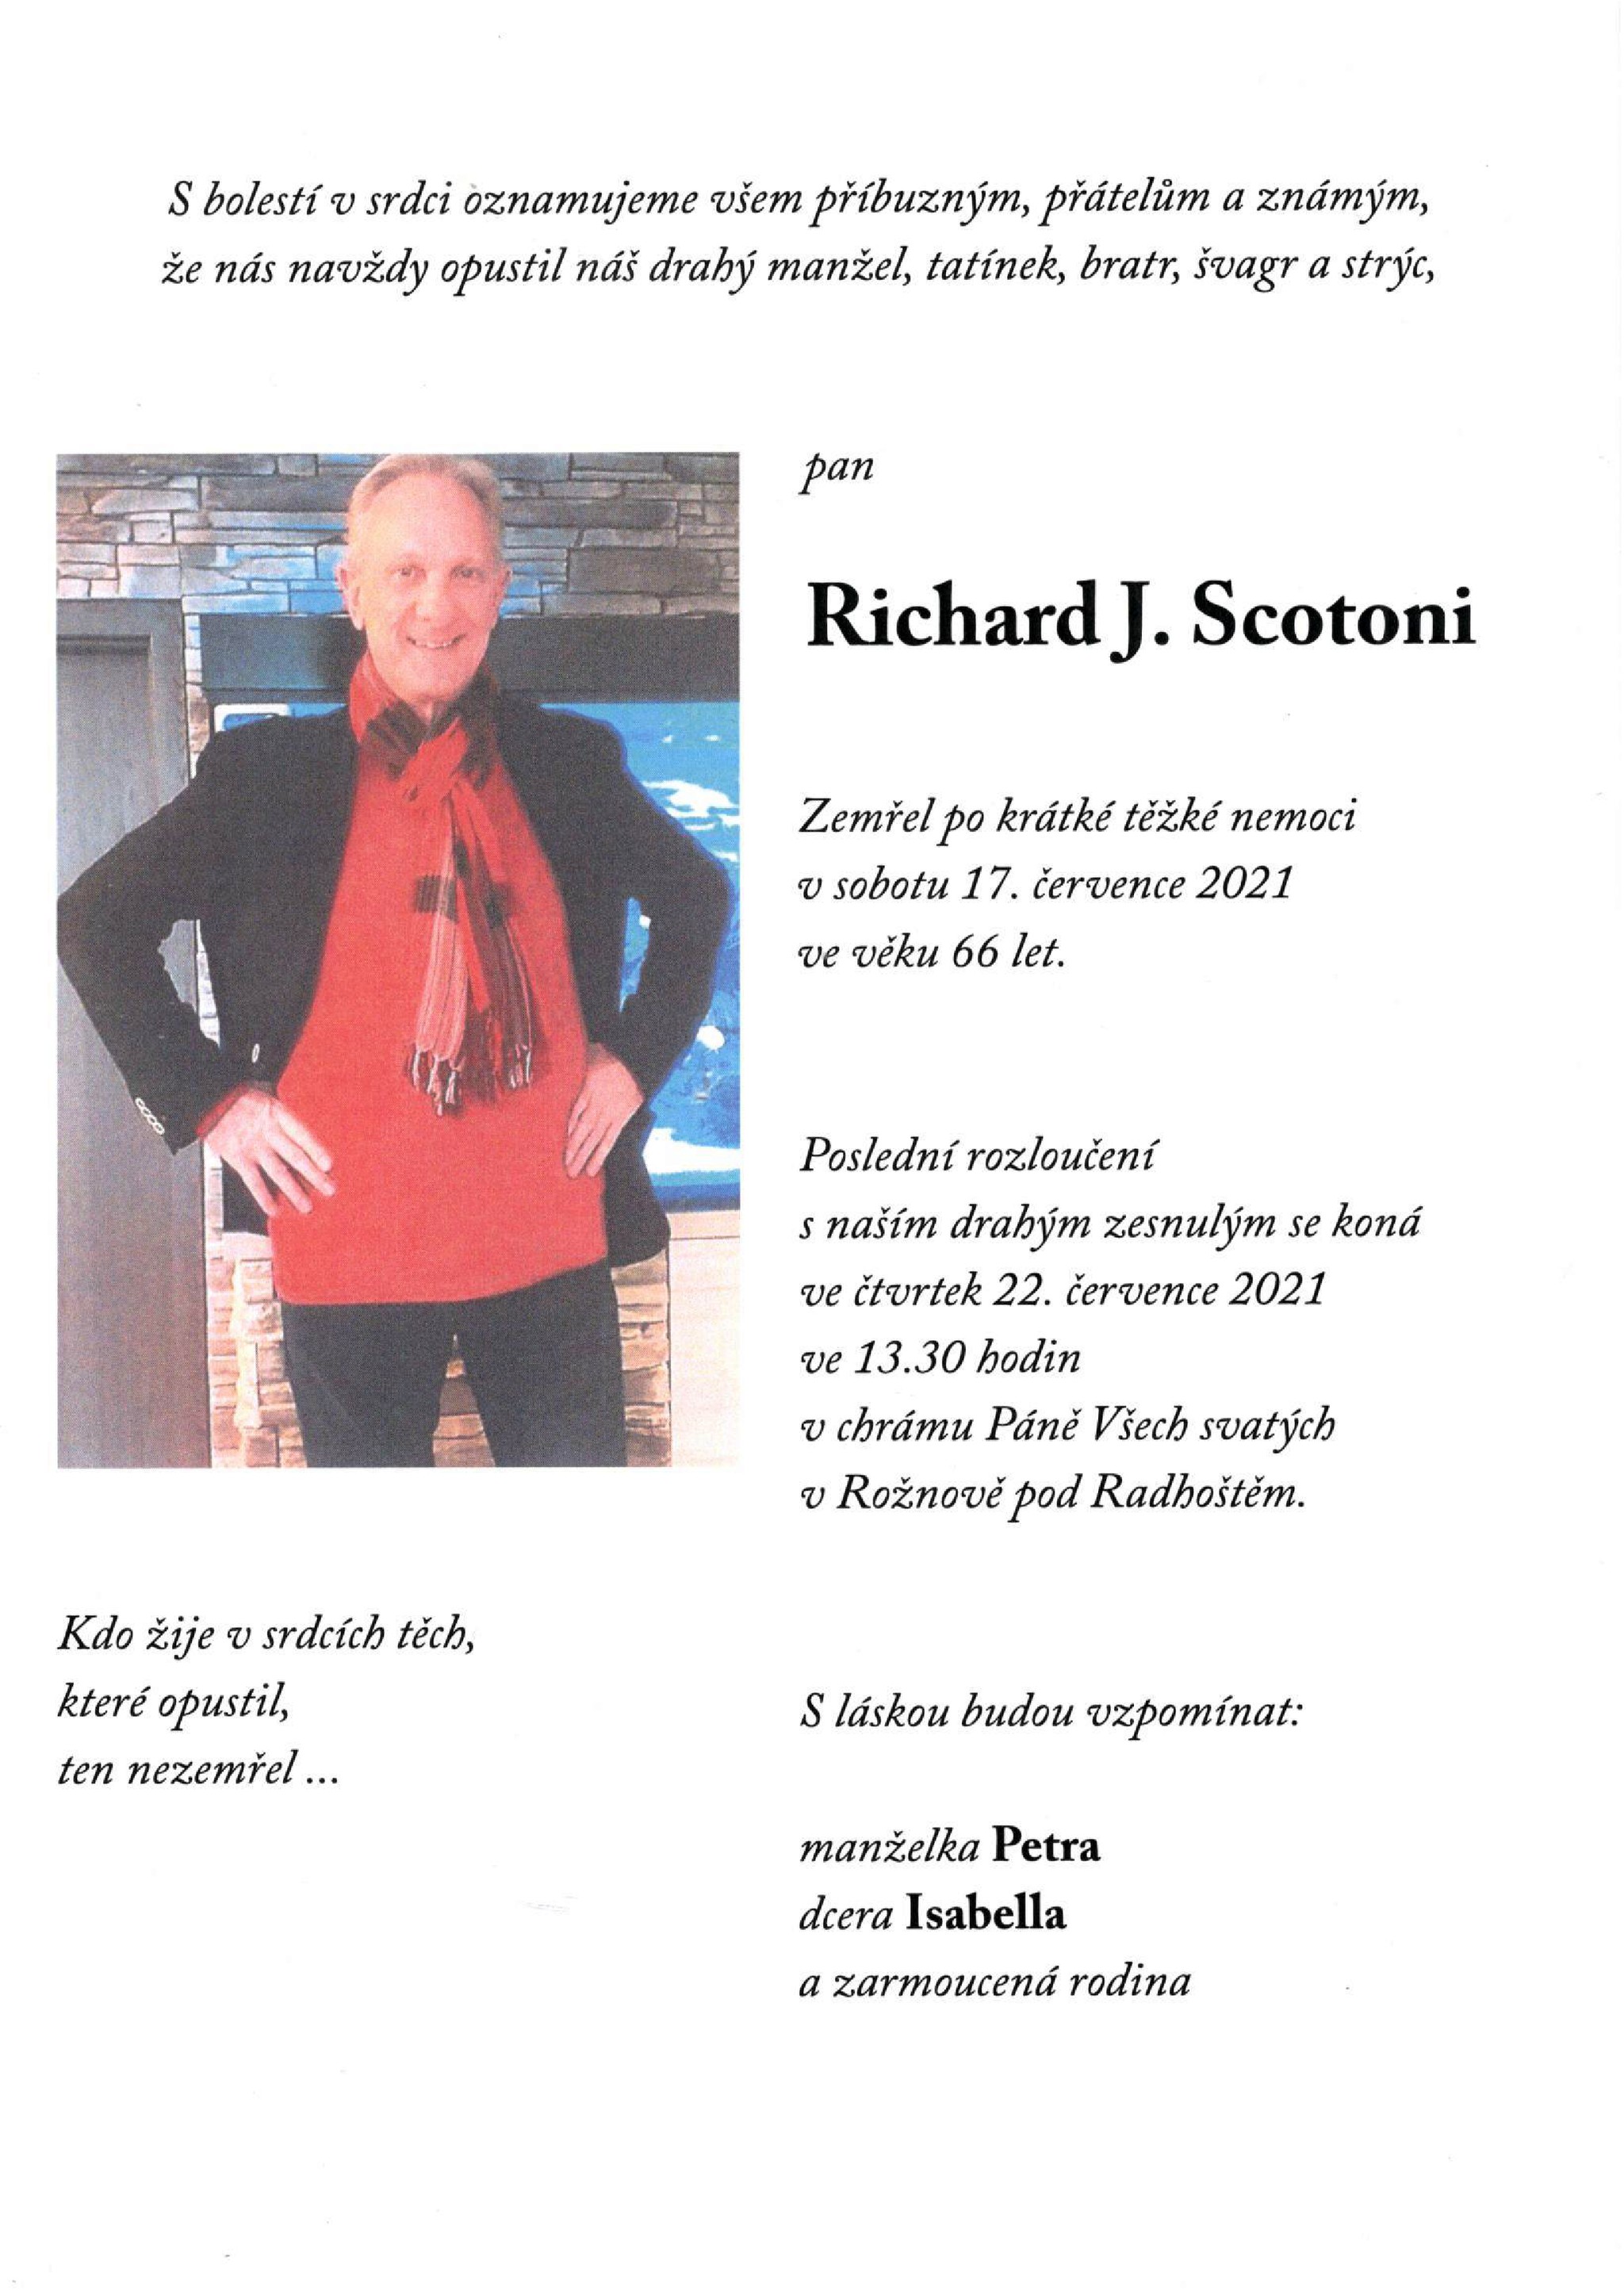 Richard J. Scotoni